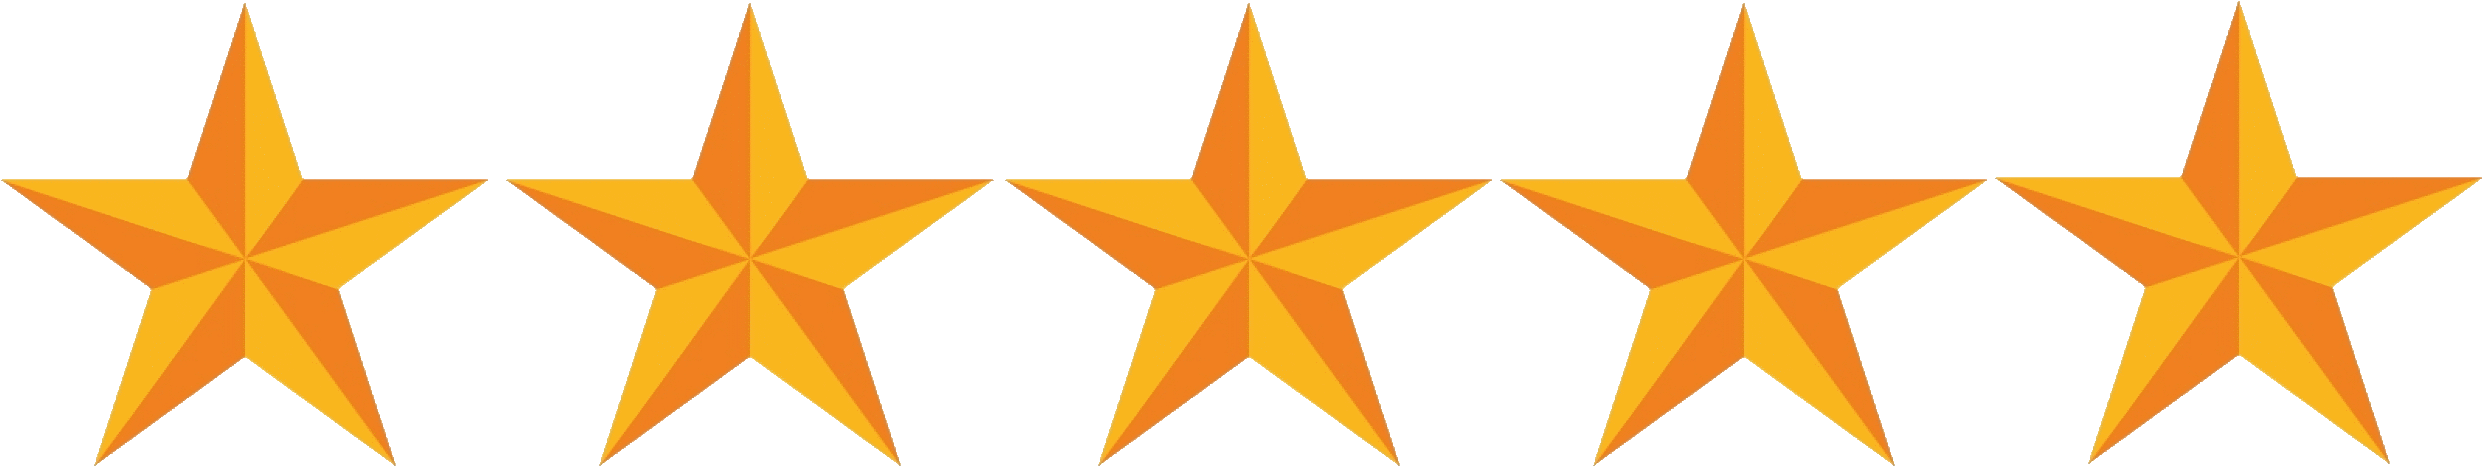 Donnie Darko 2001 Movie Download - Daily Mail 5 Star (2500x470)